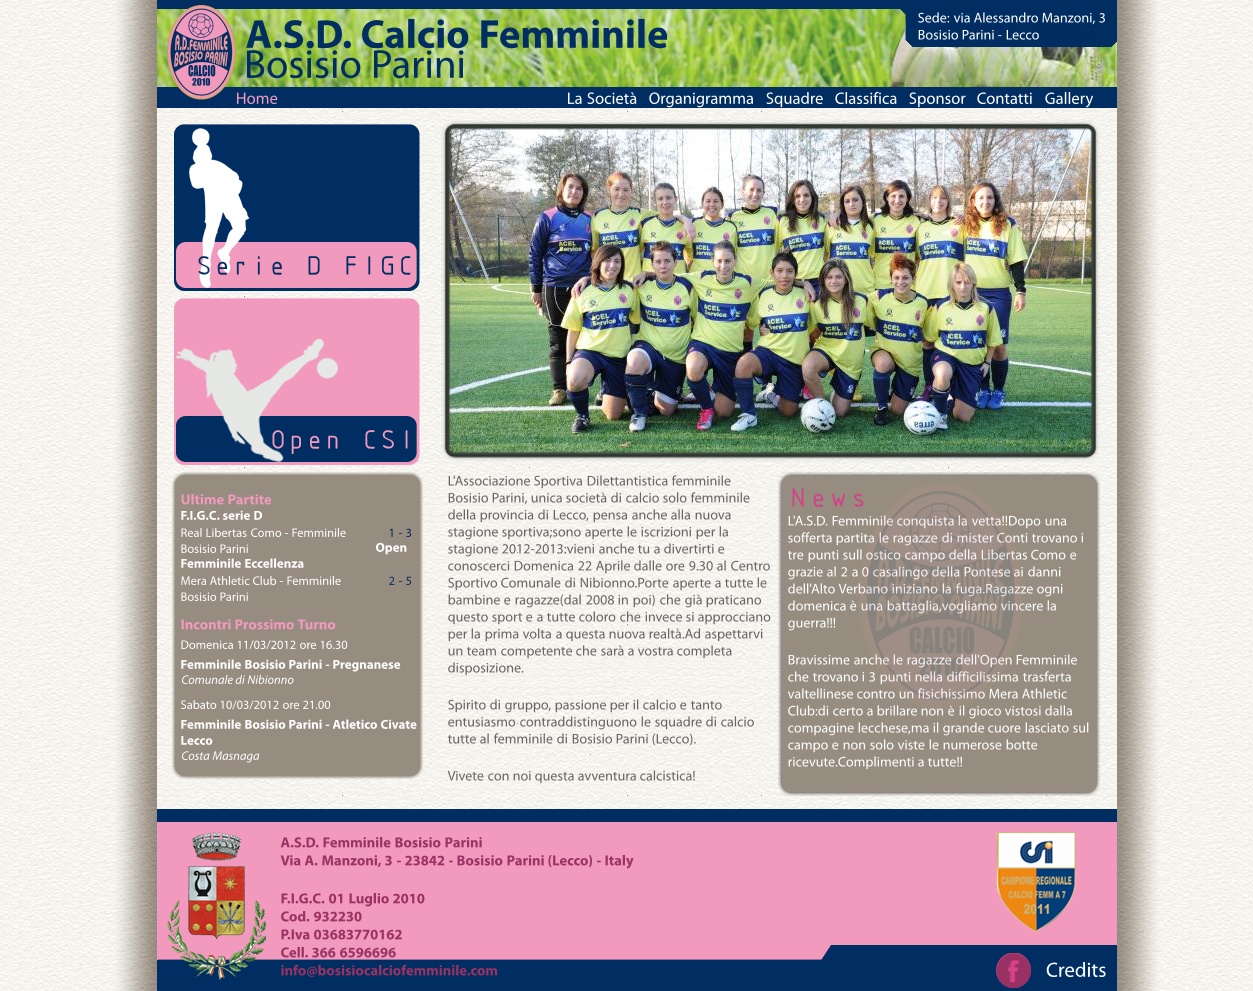 Calcio Femminile Bosisio Parini (TotsDesign)